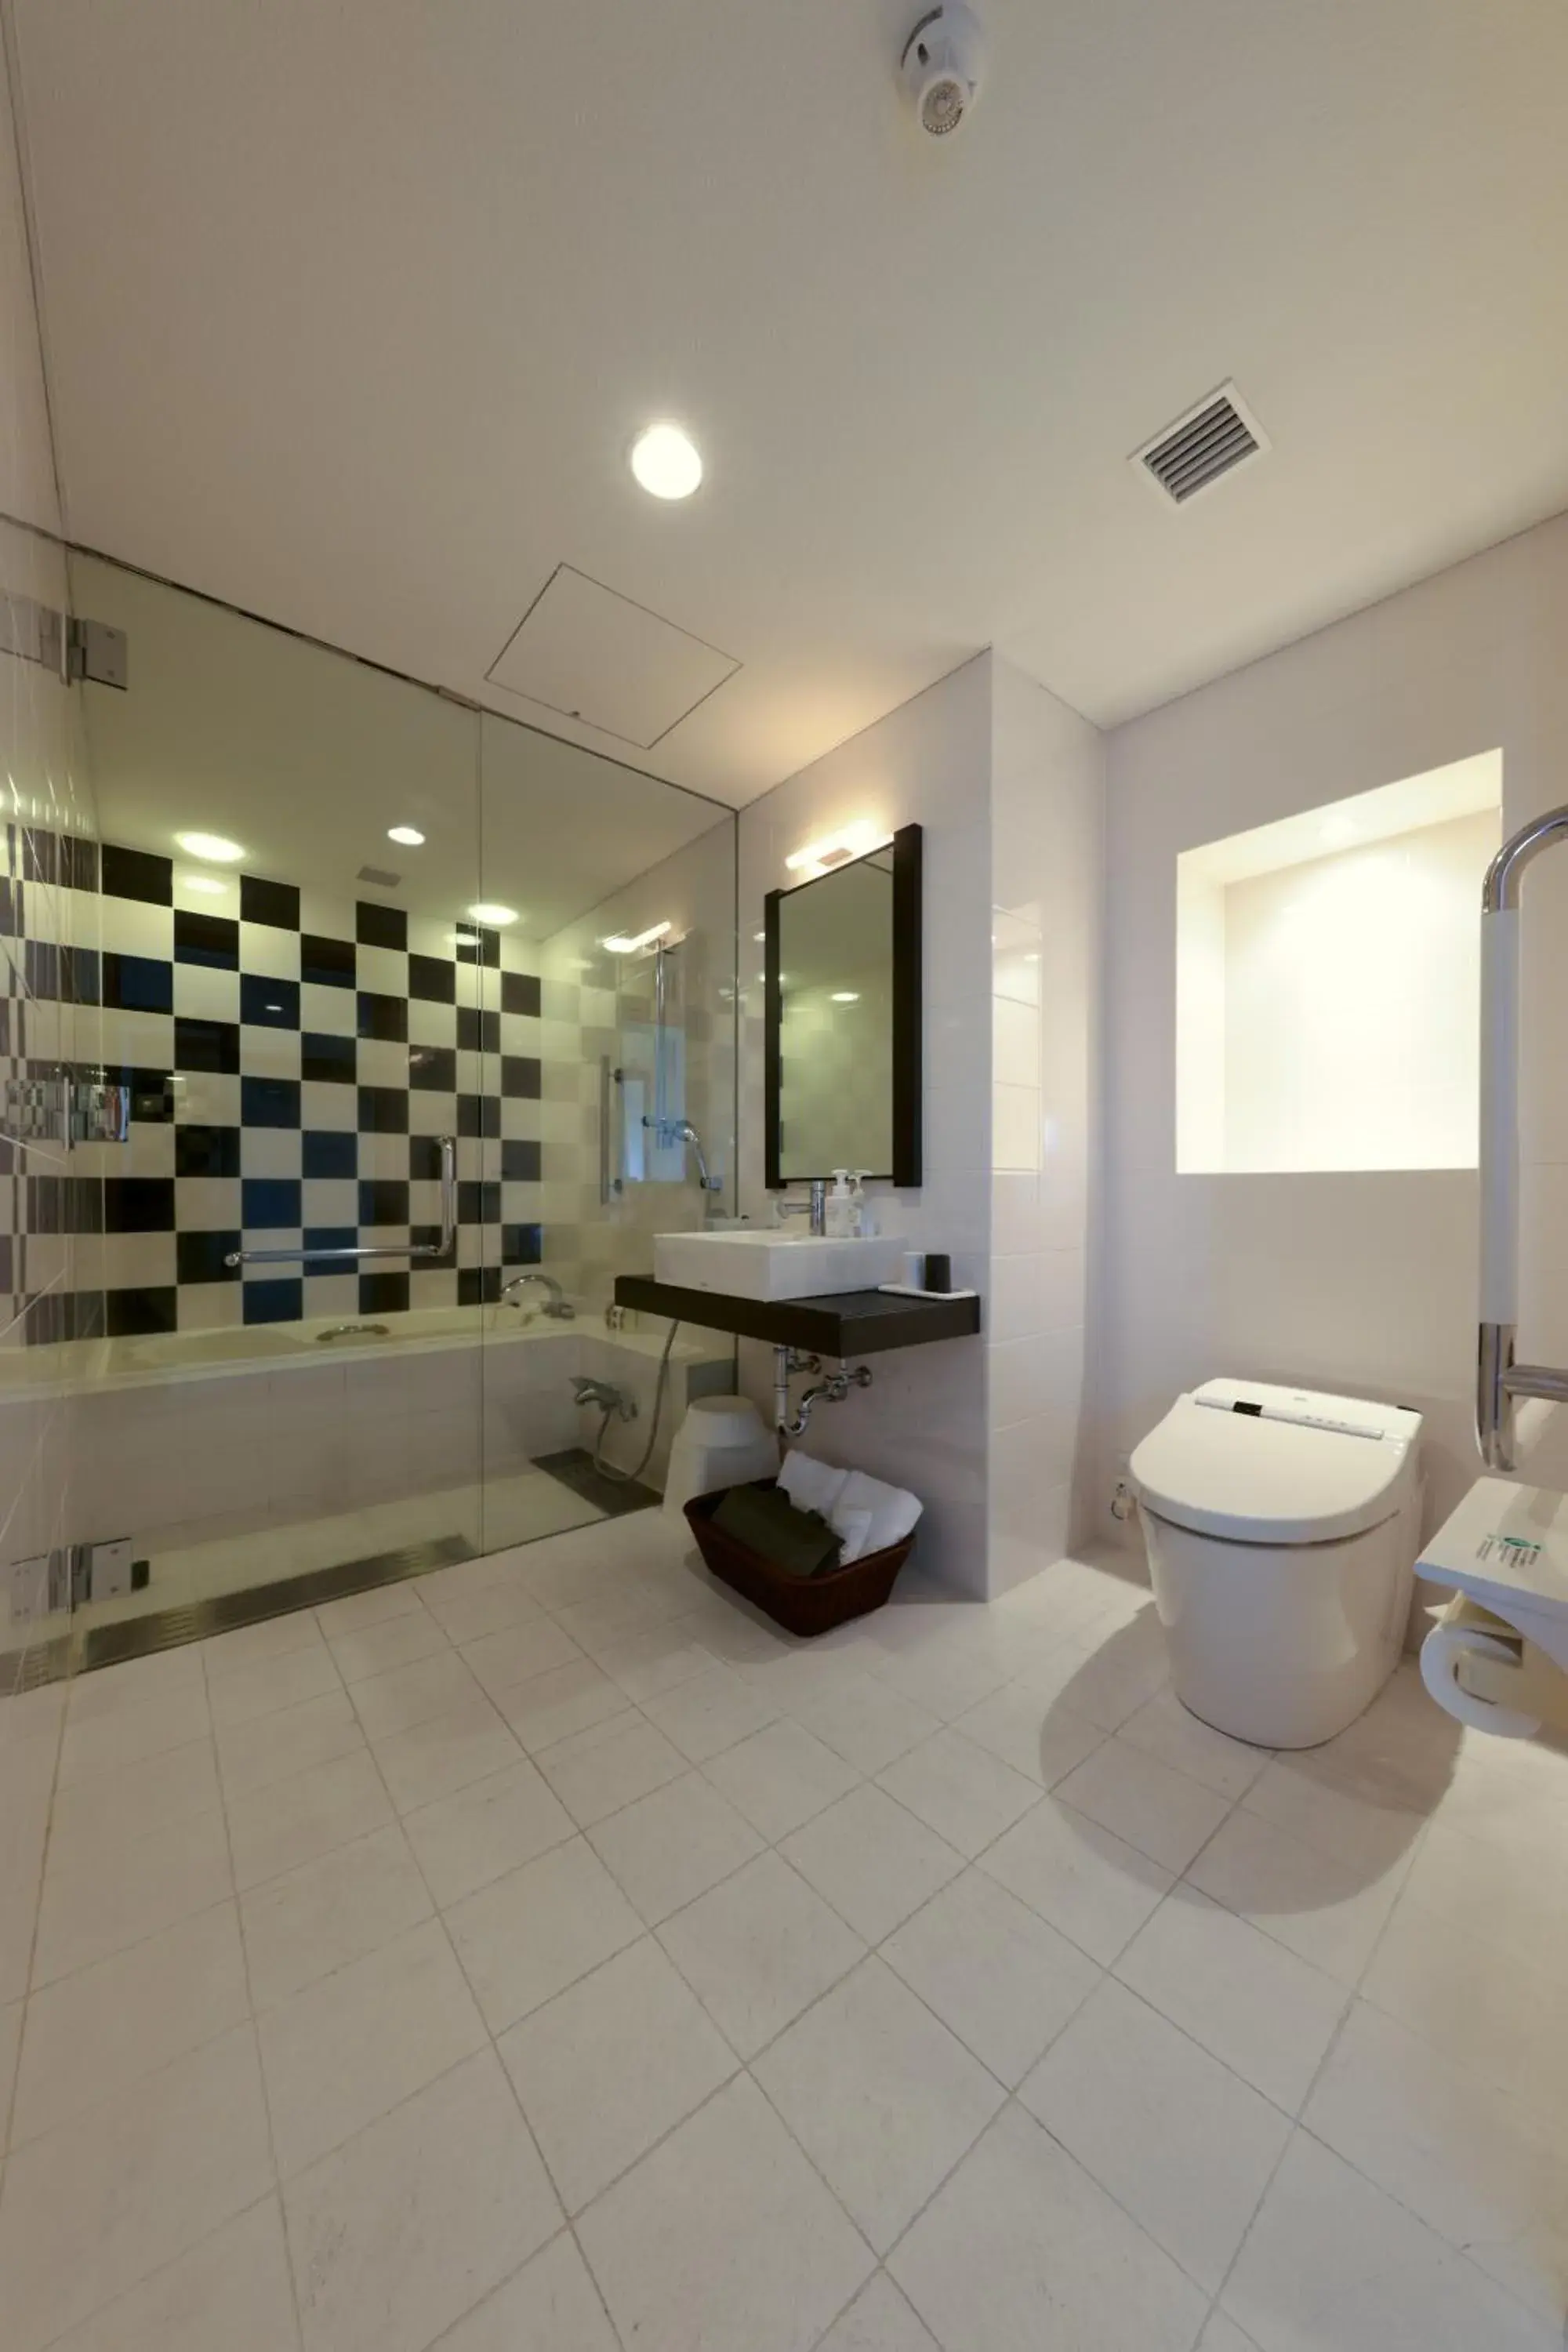 Toilet, Bathroom in Furano Natulux Hotel